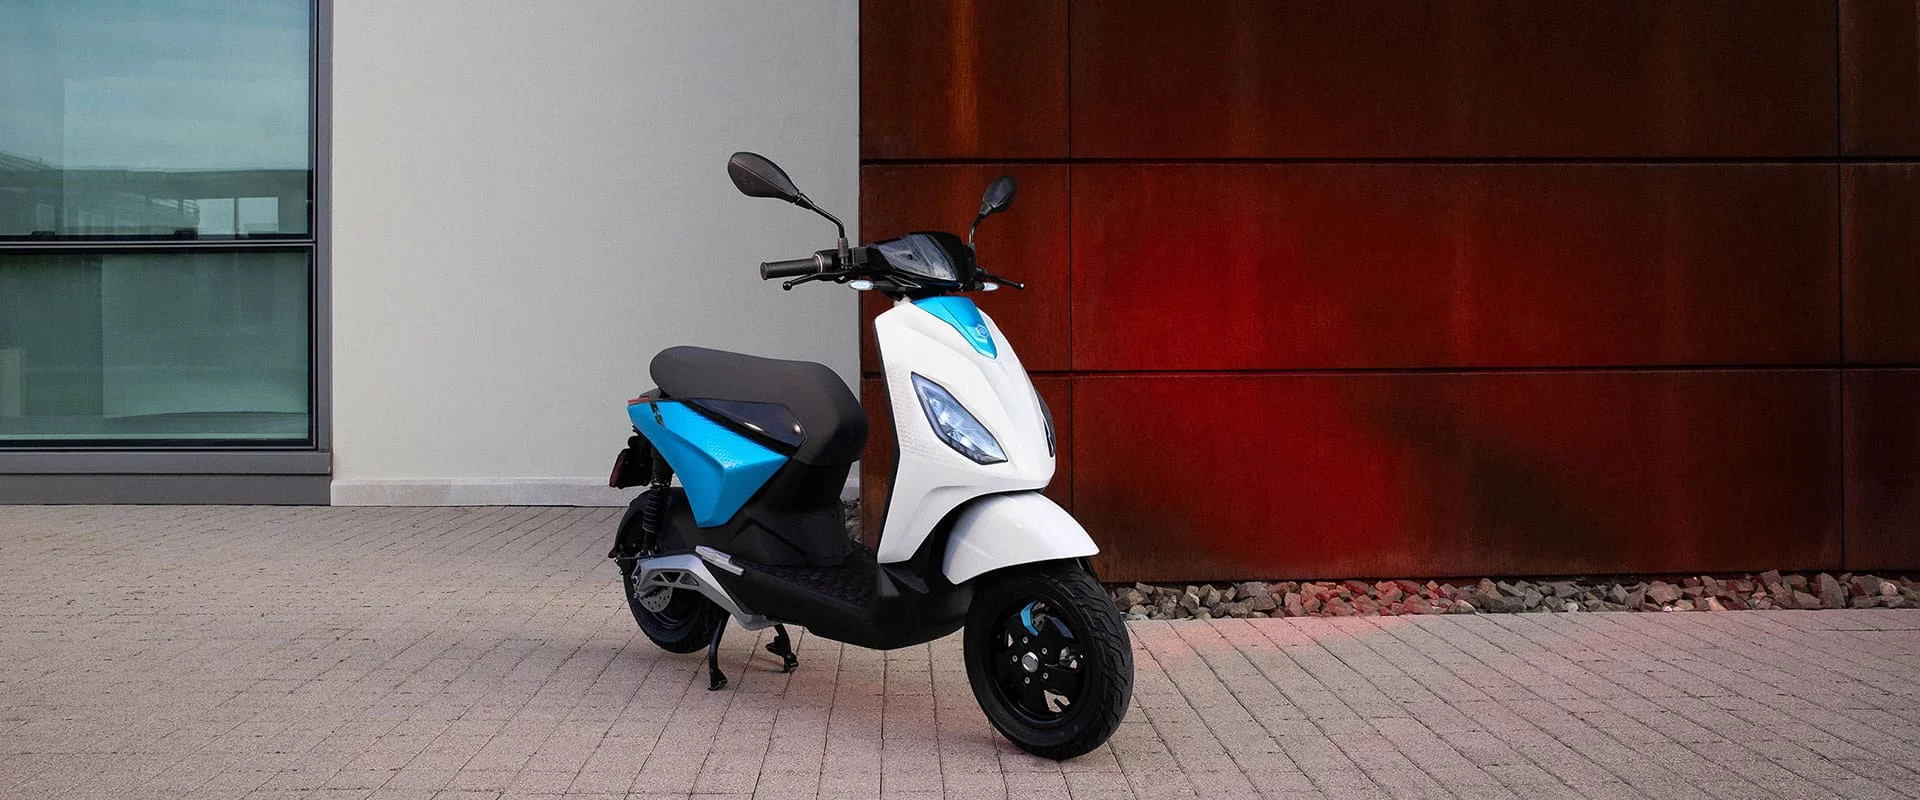 Le nouveau scooter électrique de Piaggio : le Piaggo 1